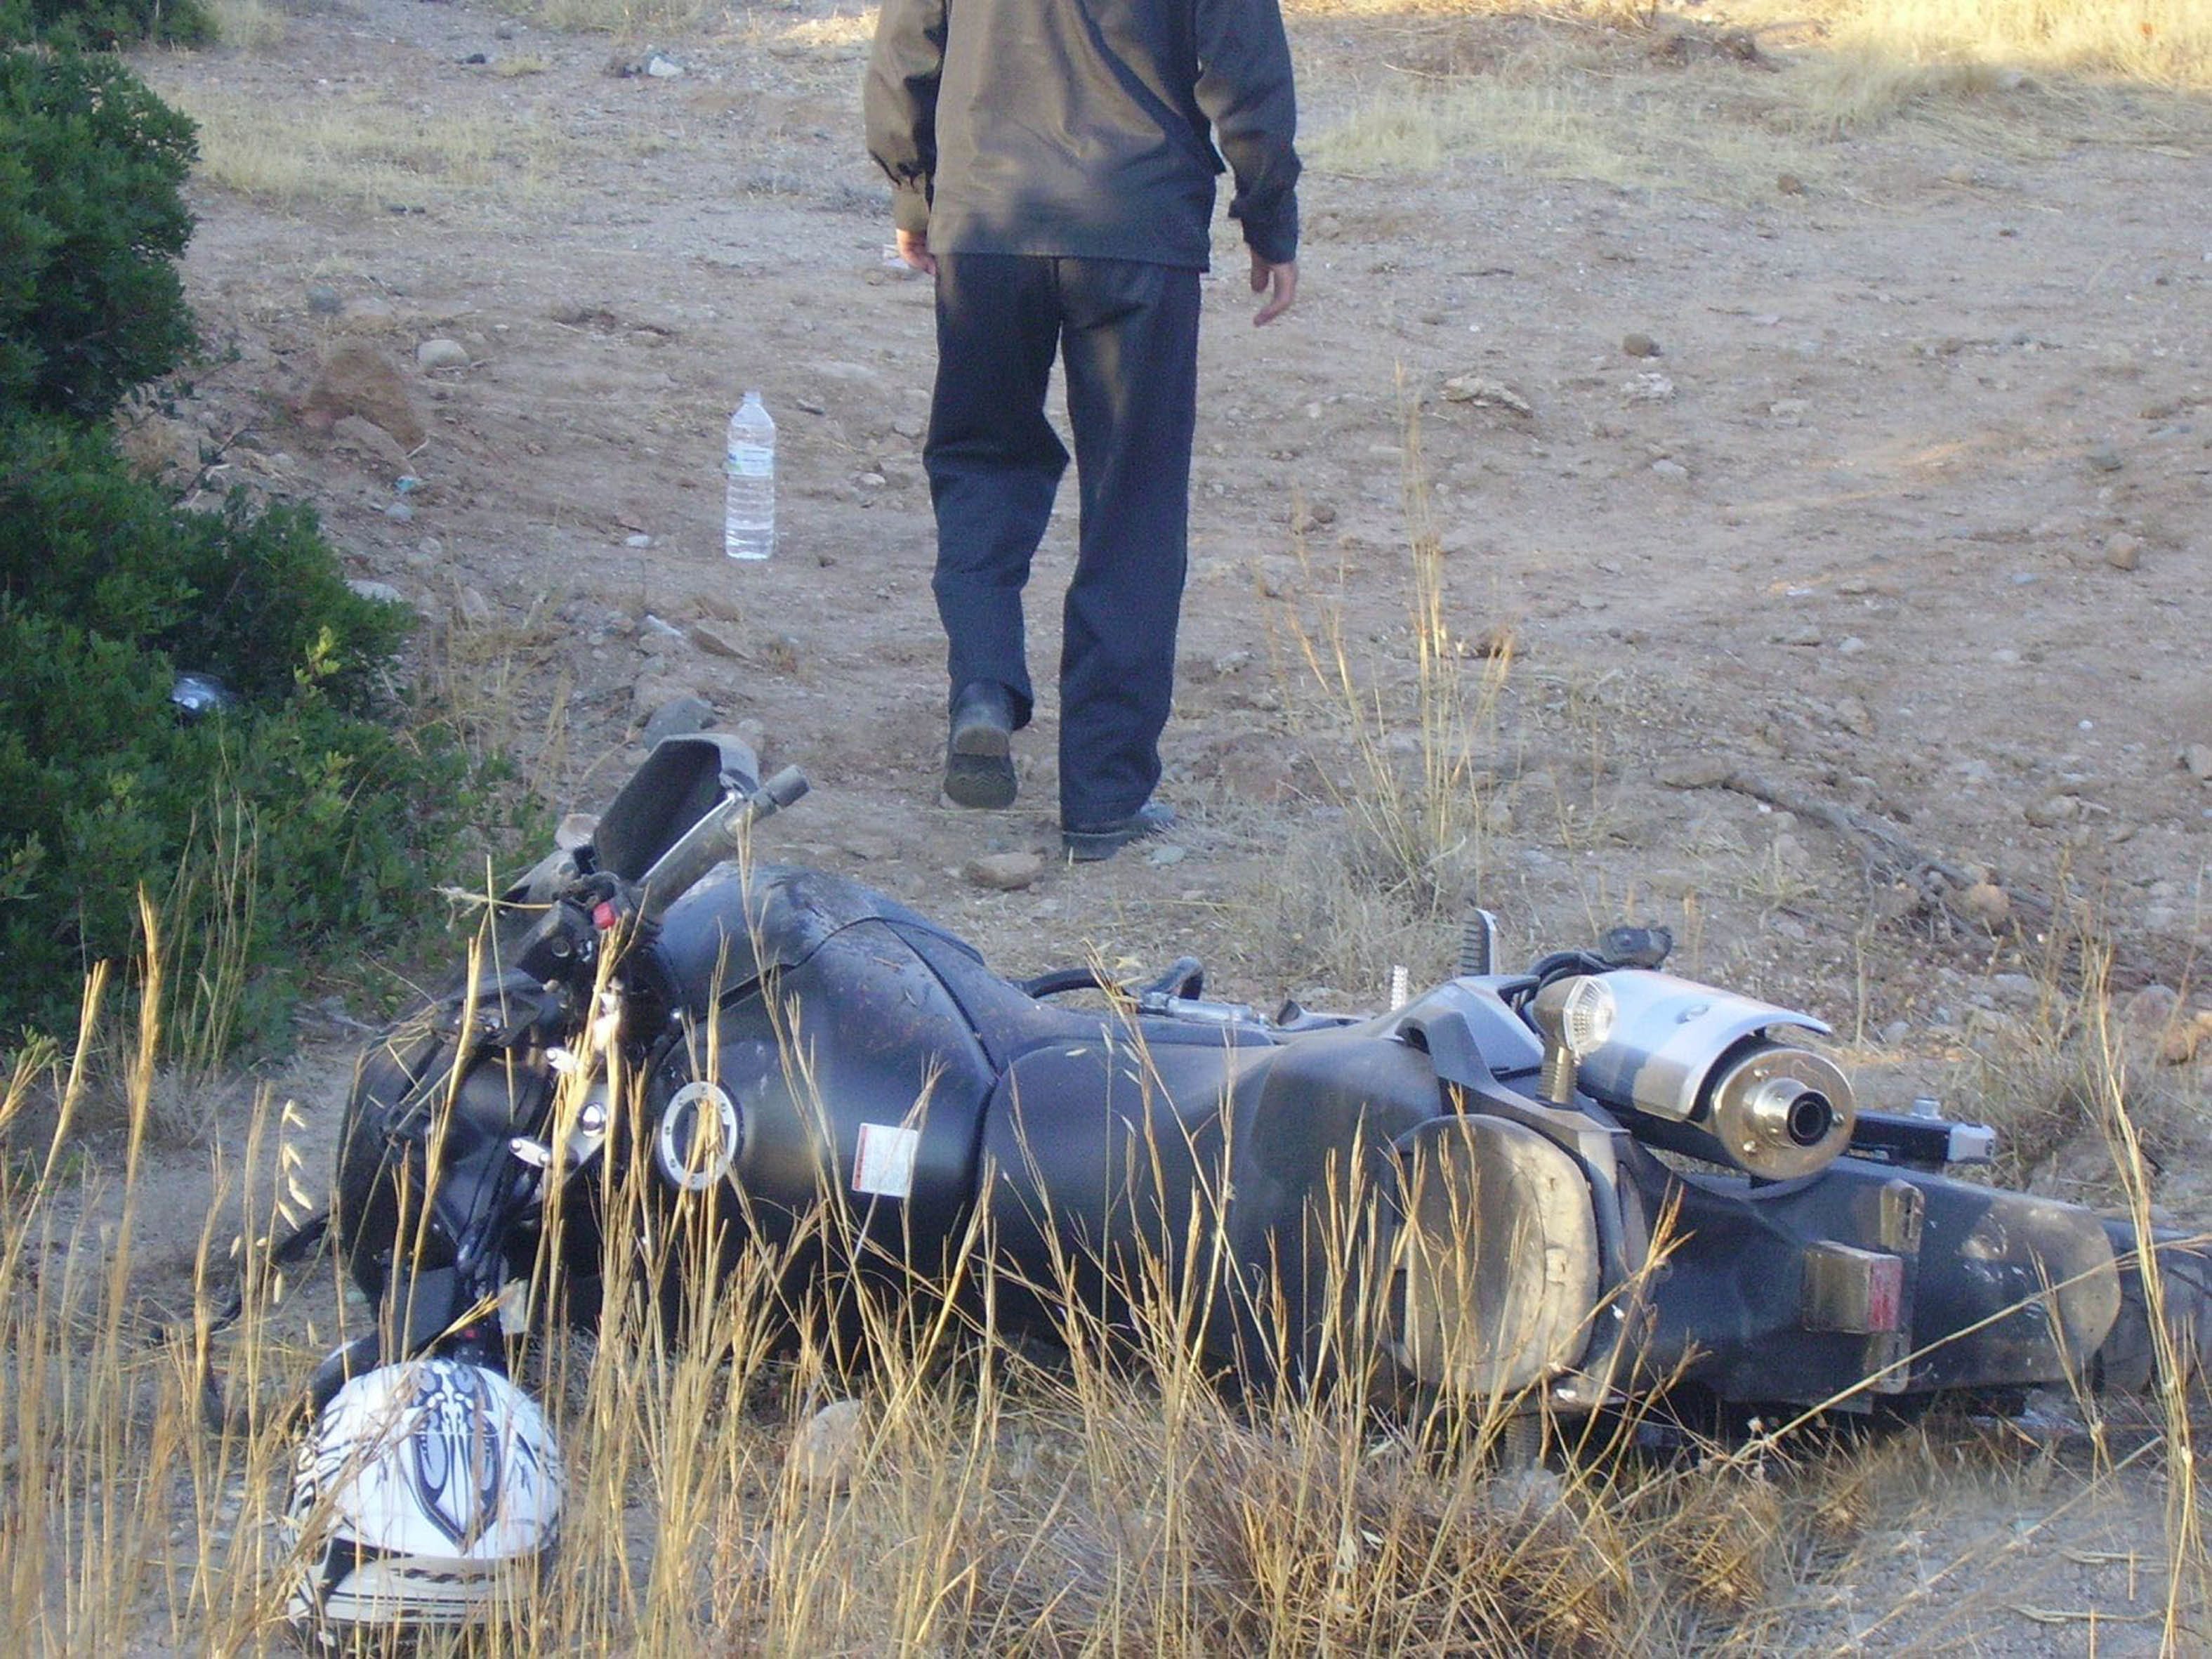 Καταδικάστηκε αντιδήμαρχος για το θάνατο μοτοσικλετιστή λόγω του κακού οδοστρώματος